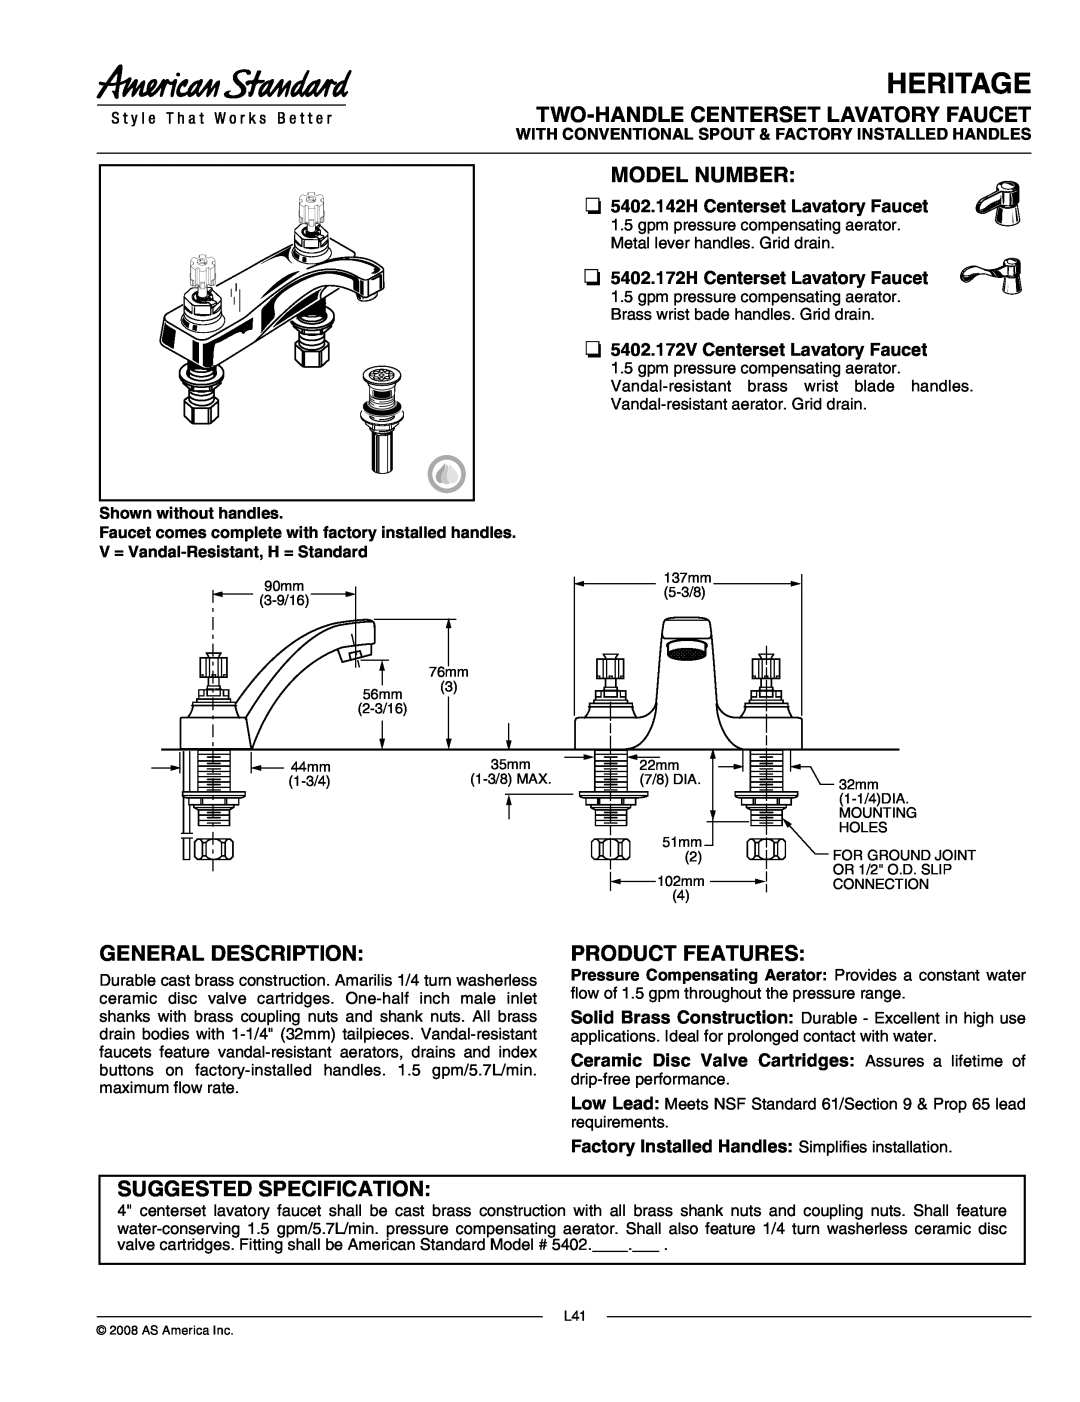 American Standard 5402.172V manual Heritage, Two-Handlecenterset Lavatory Faucet, Model Number, General Description 